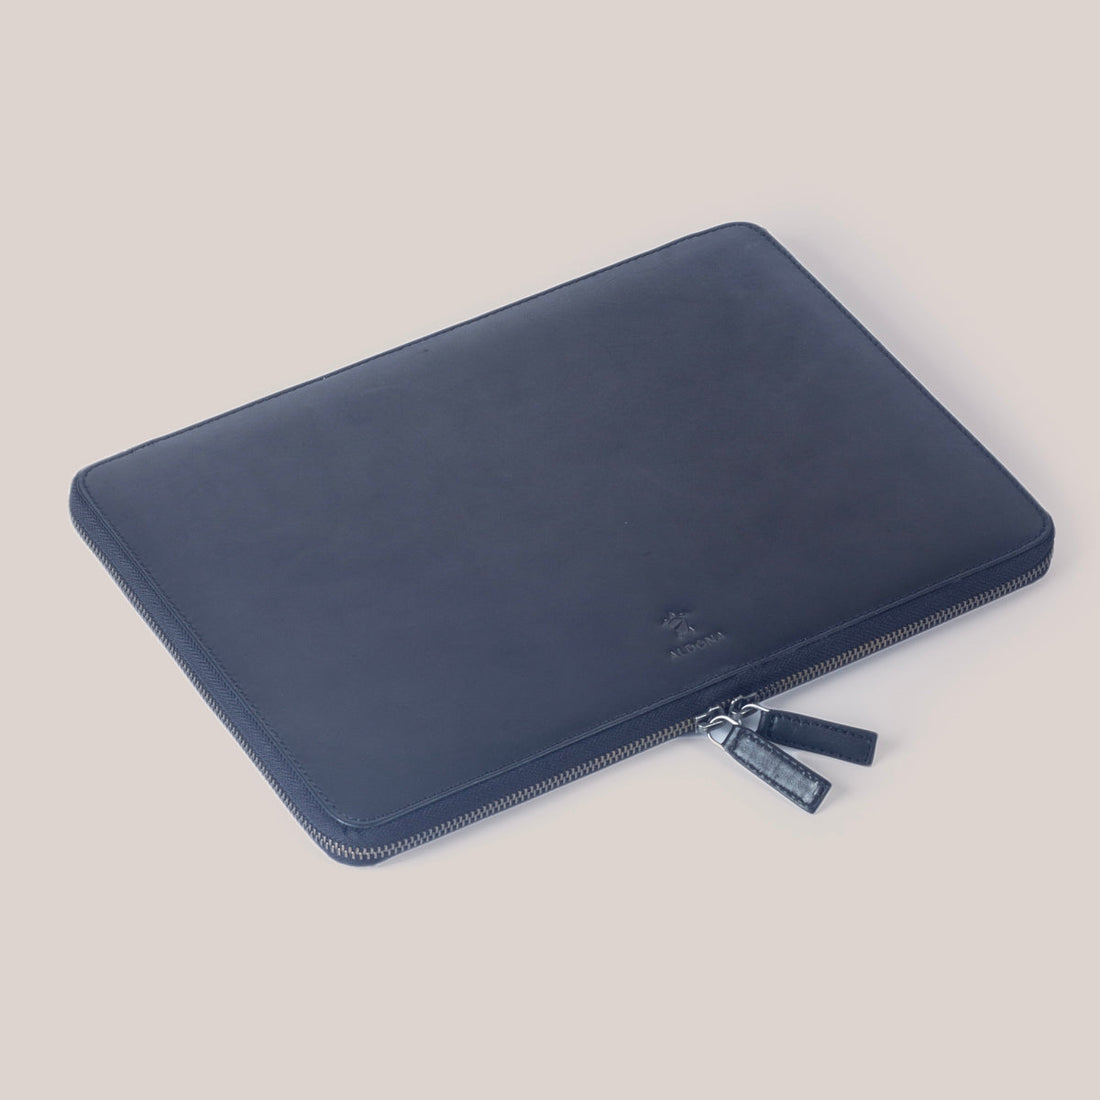 Samsung Galaxy Zippered Laptop Case - Felt and Tan Crunch